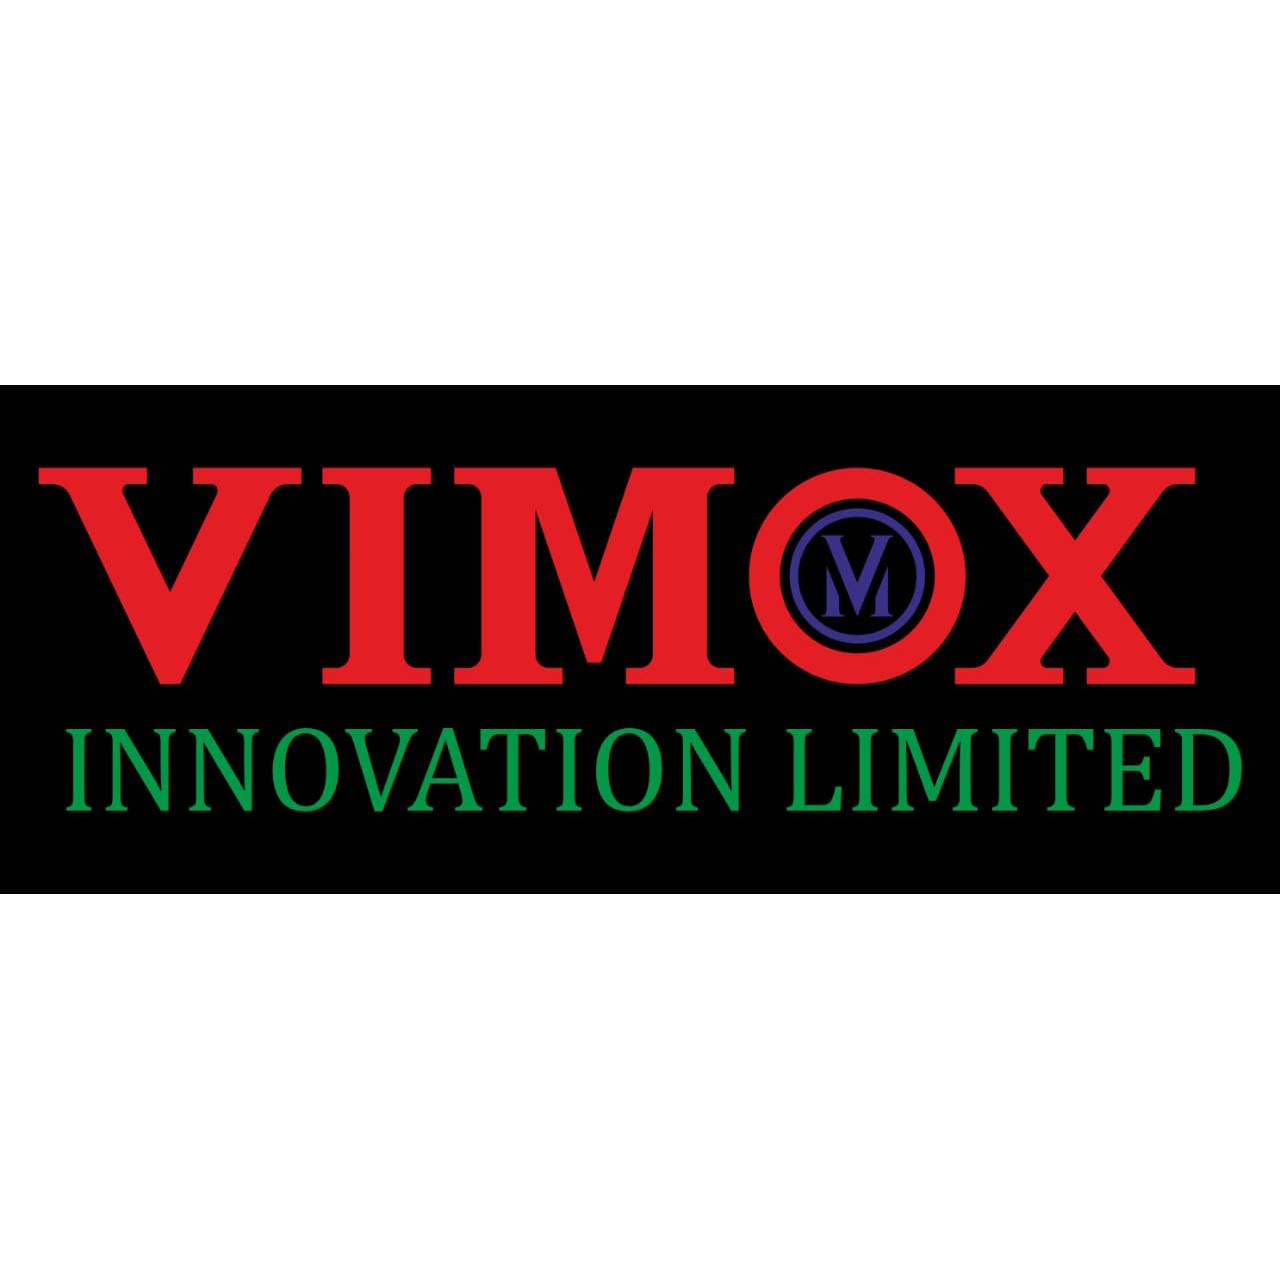 Vimox Innovation Limited